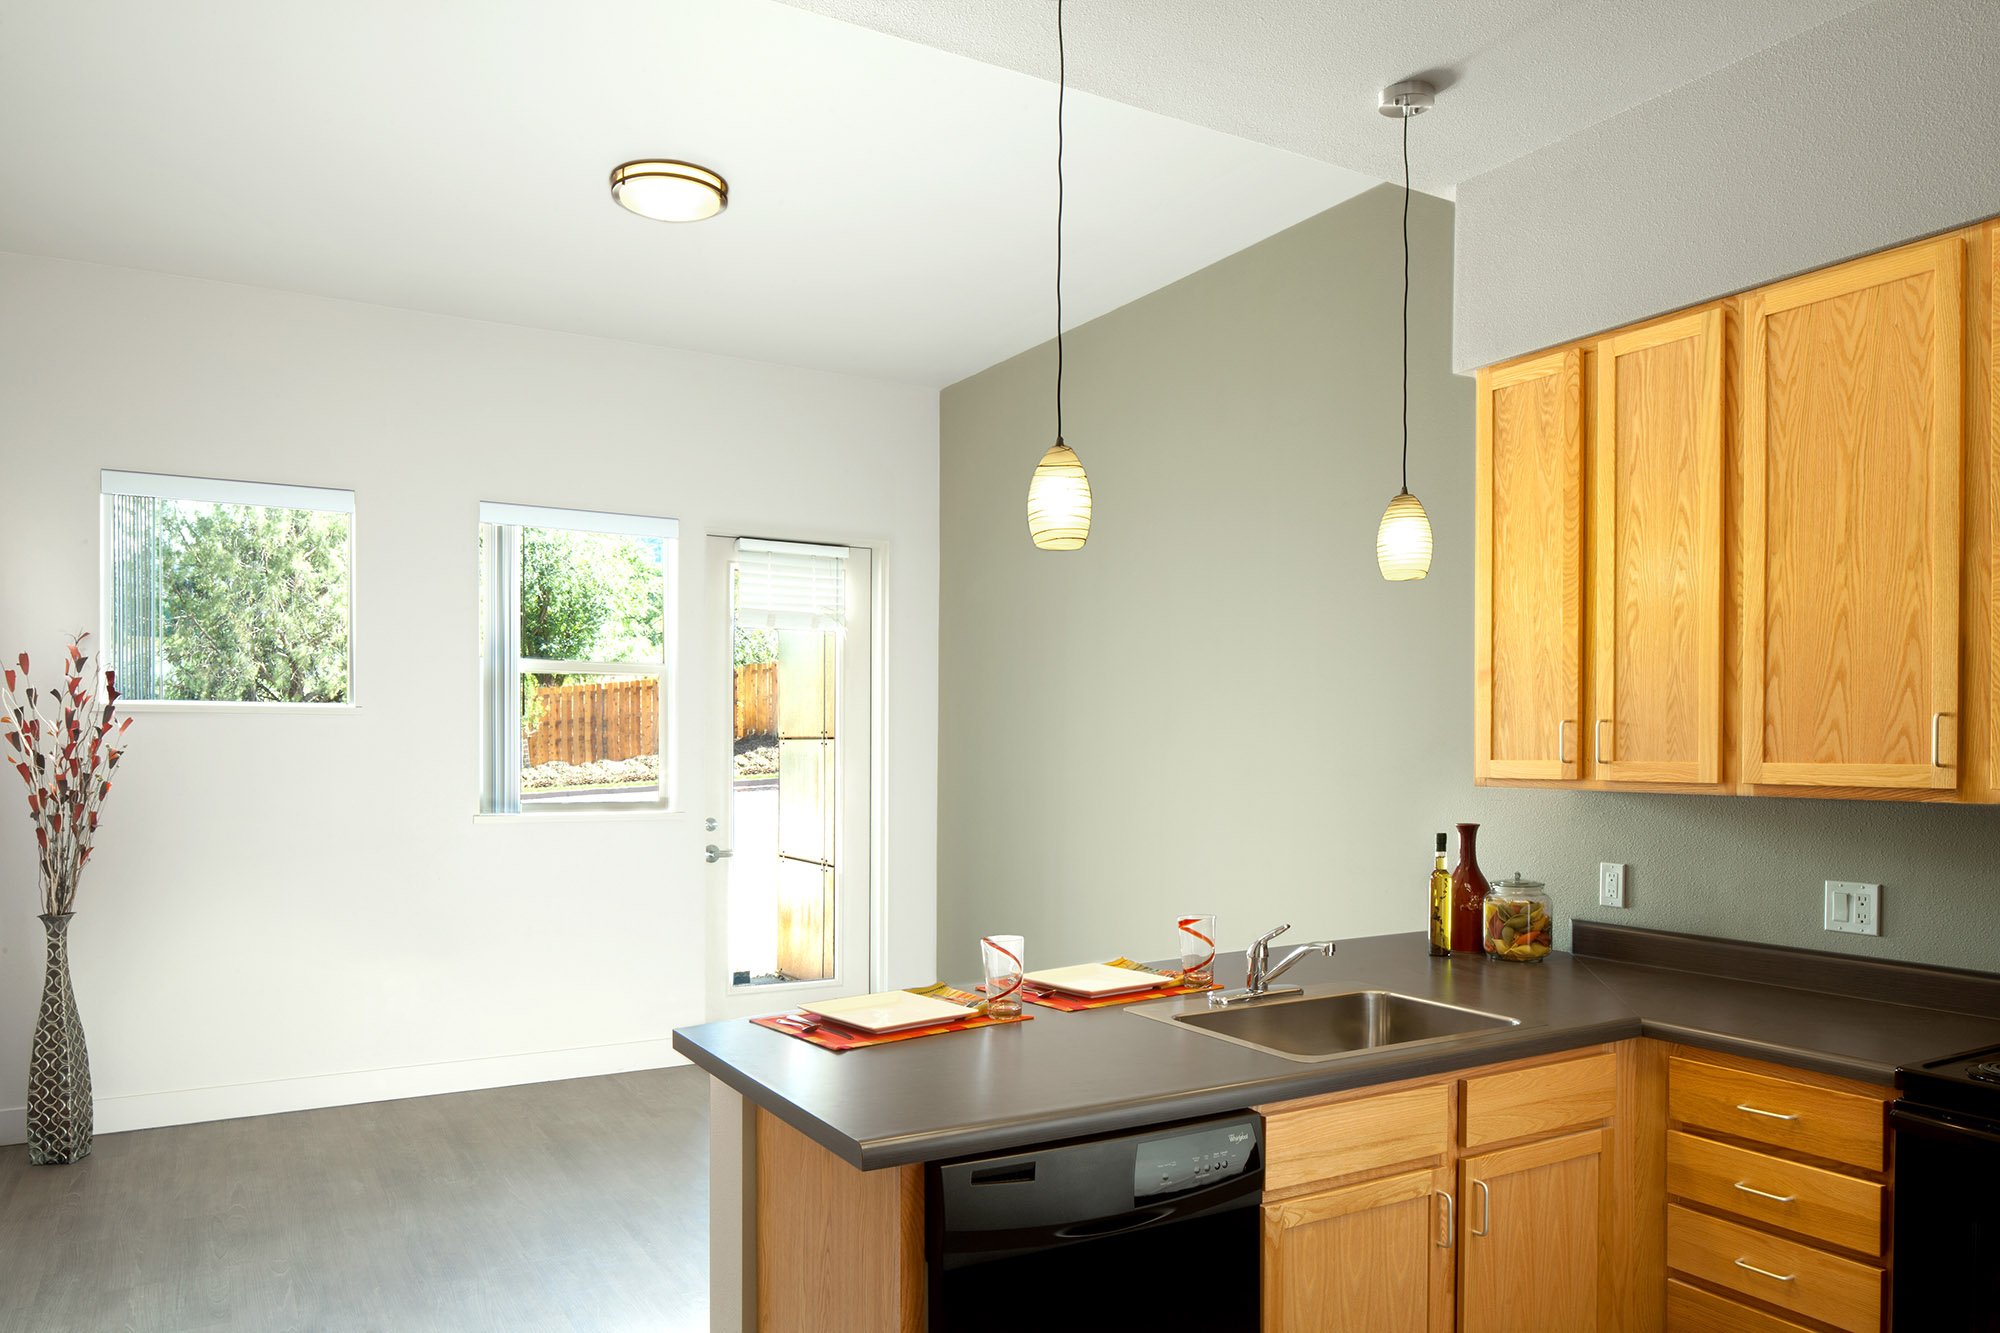 interior view of kitchen and breakfast nook at lumien durango